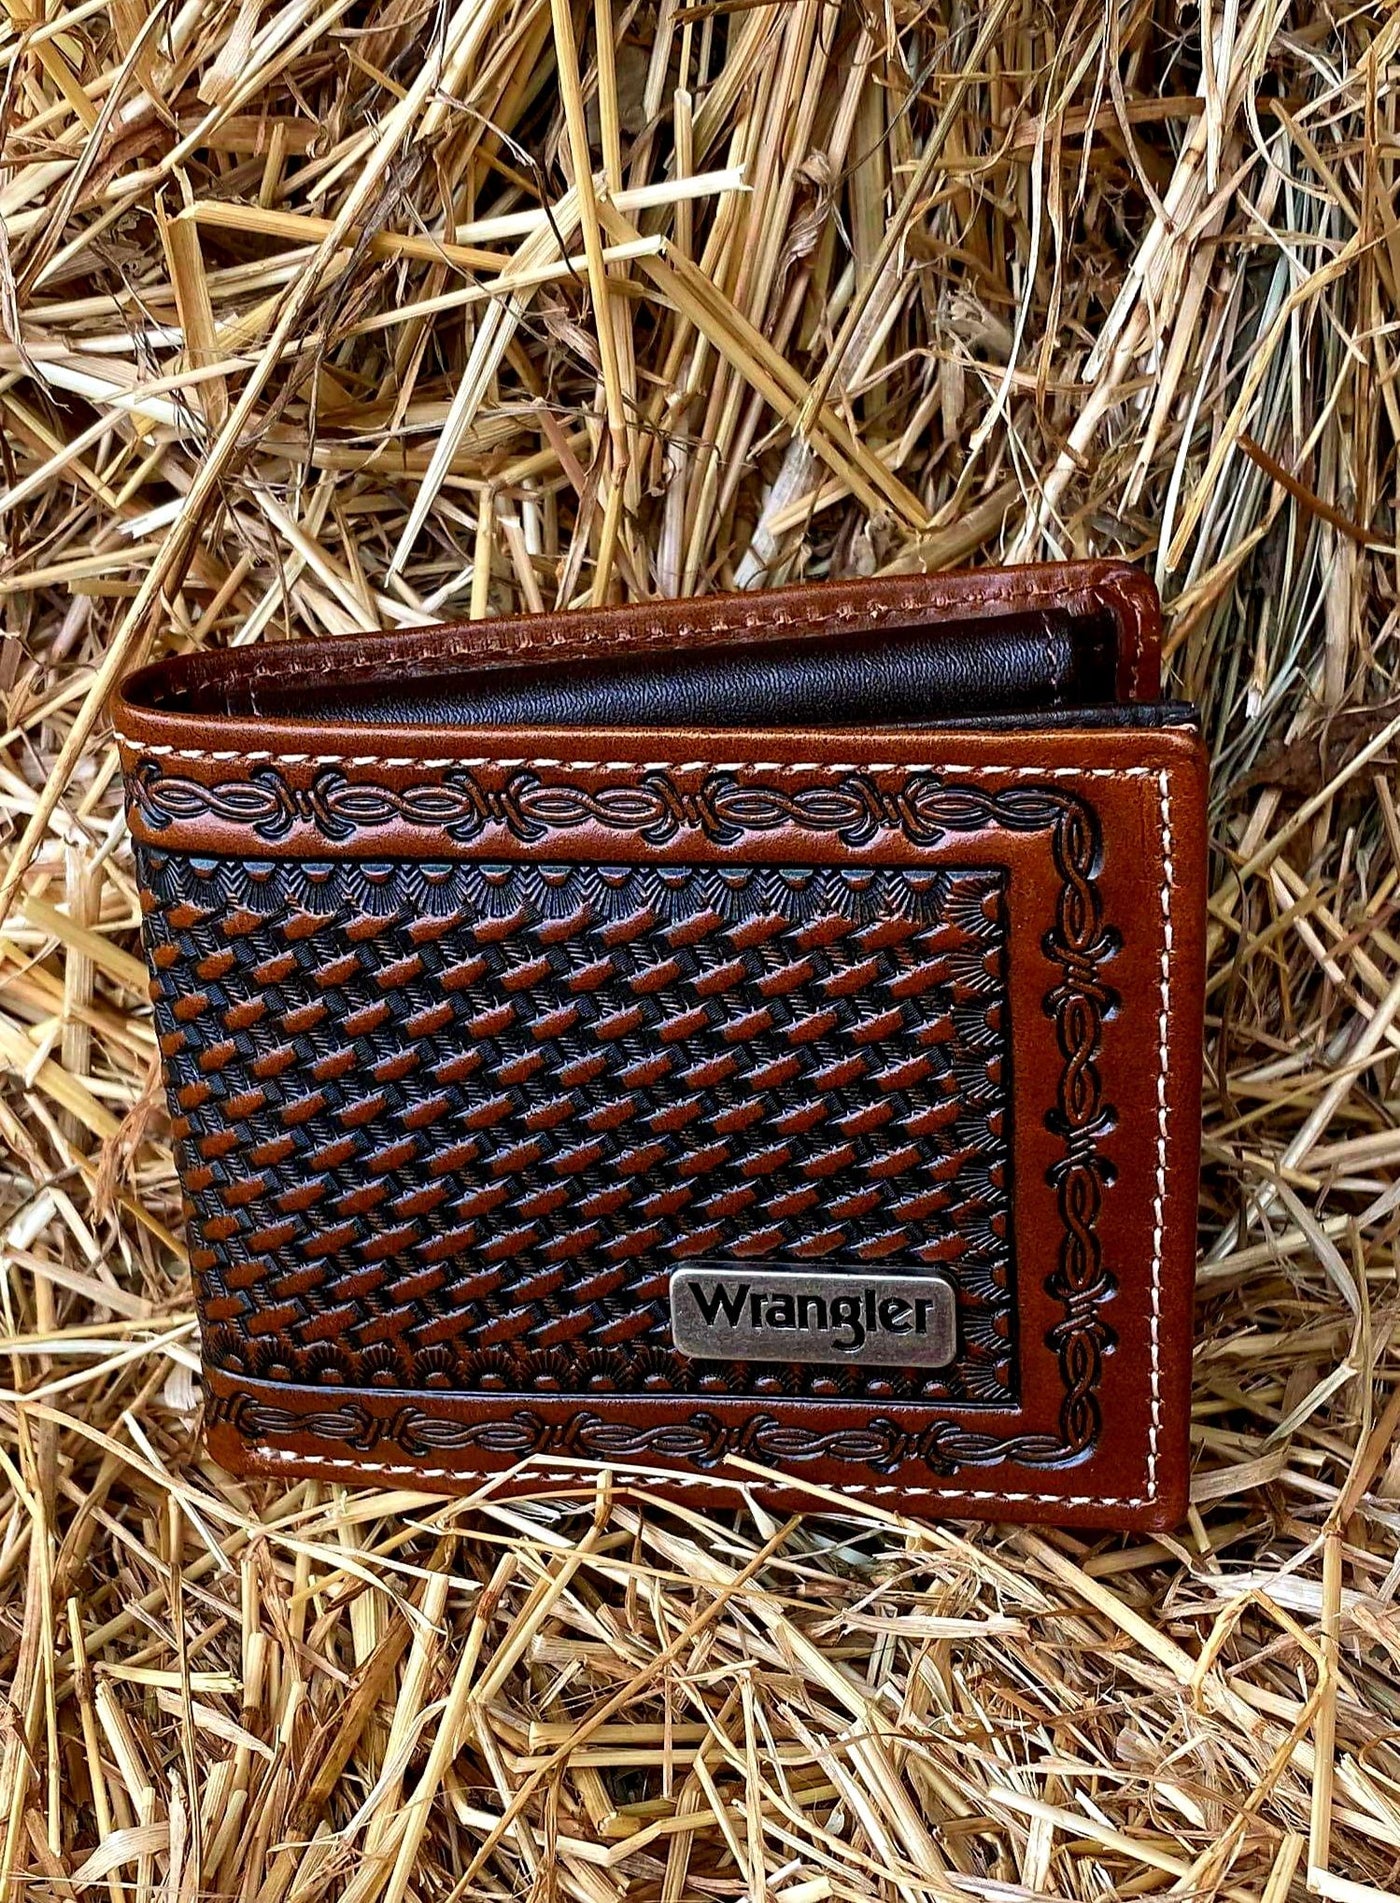 Wrangler Trevor Leather Wallet